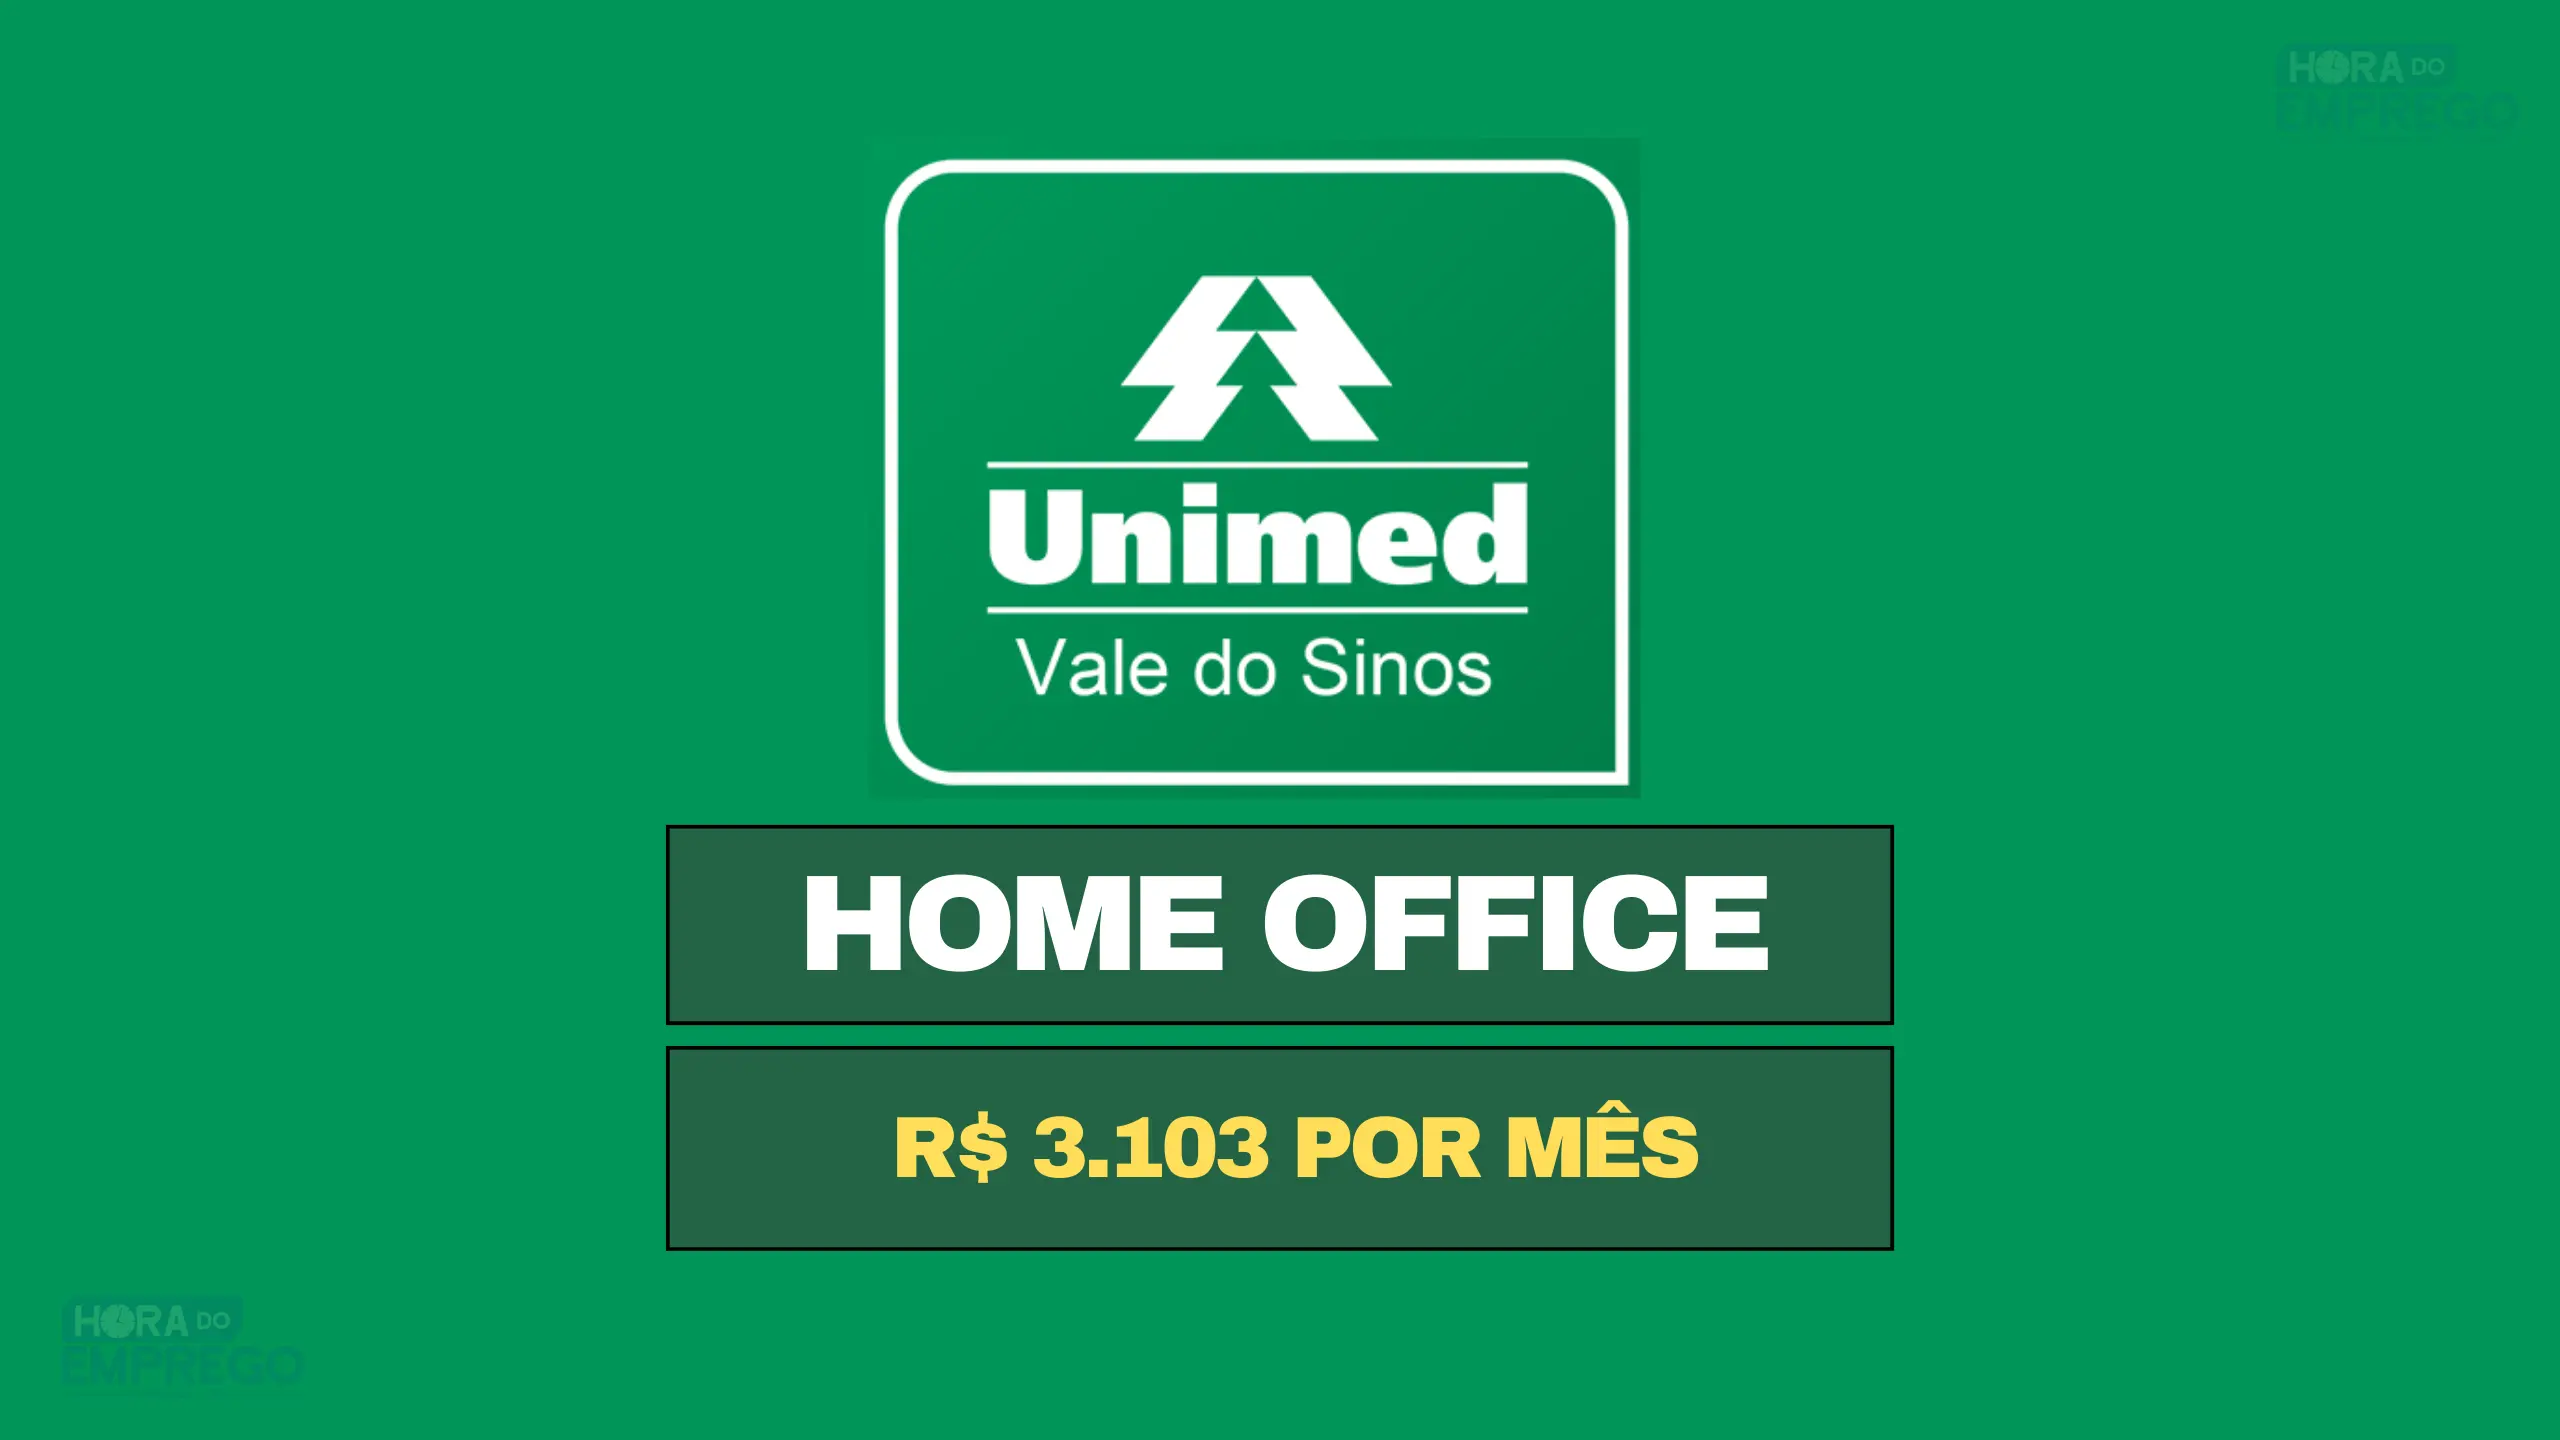 Unimed VS contrata para TRABALHAR DE CASA em HOME OFFICE com média salarial de R$ 3.103 por mês.